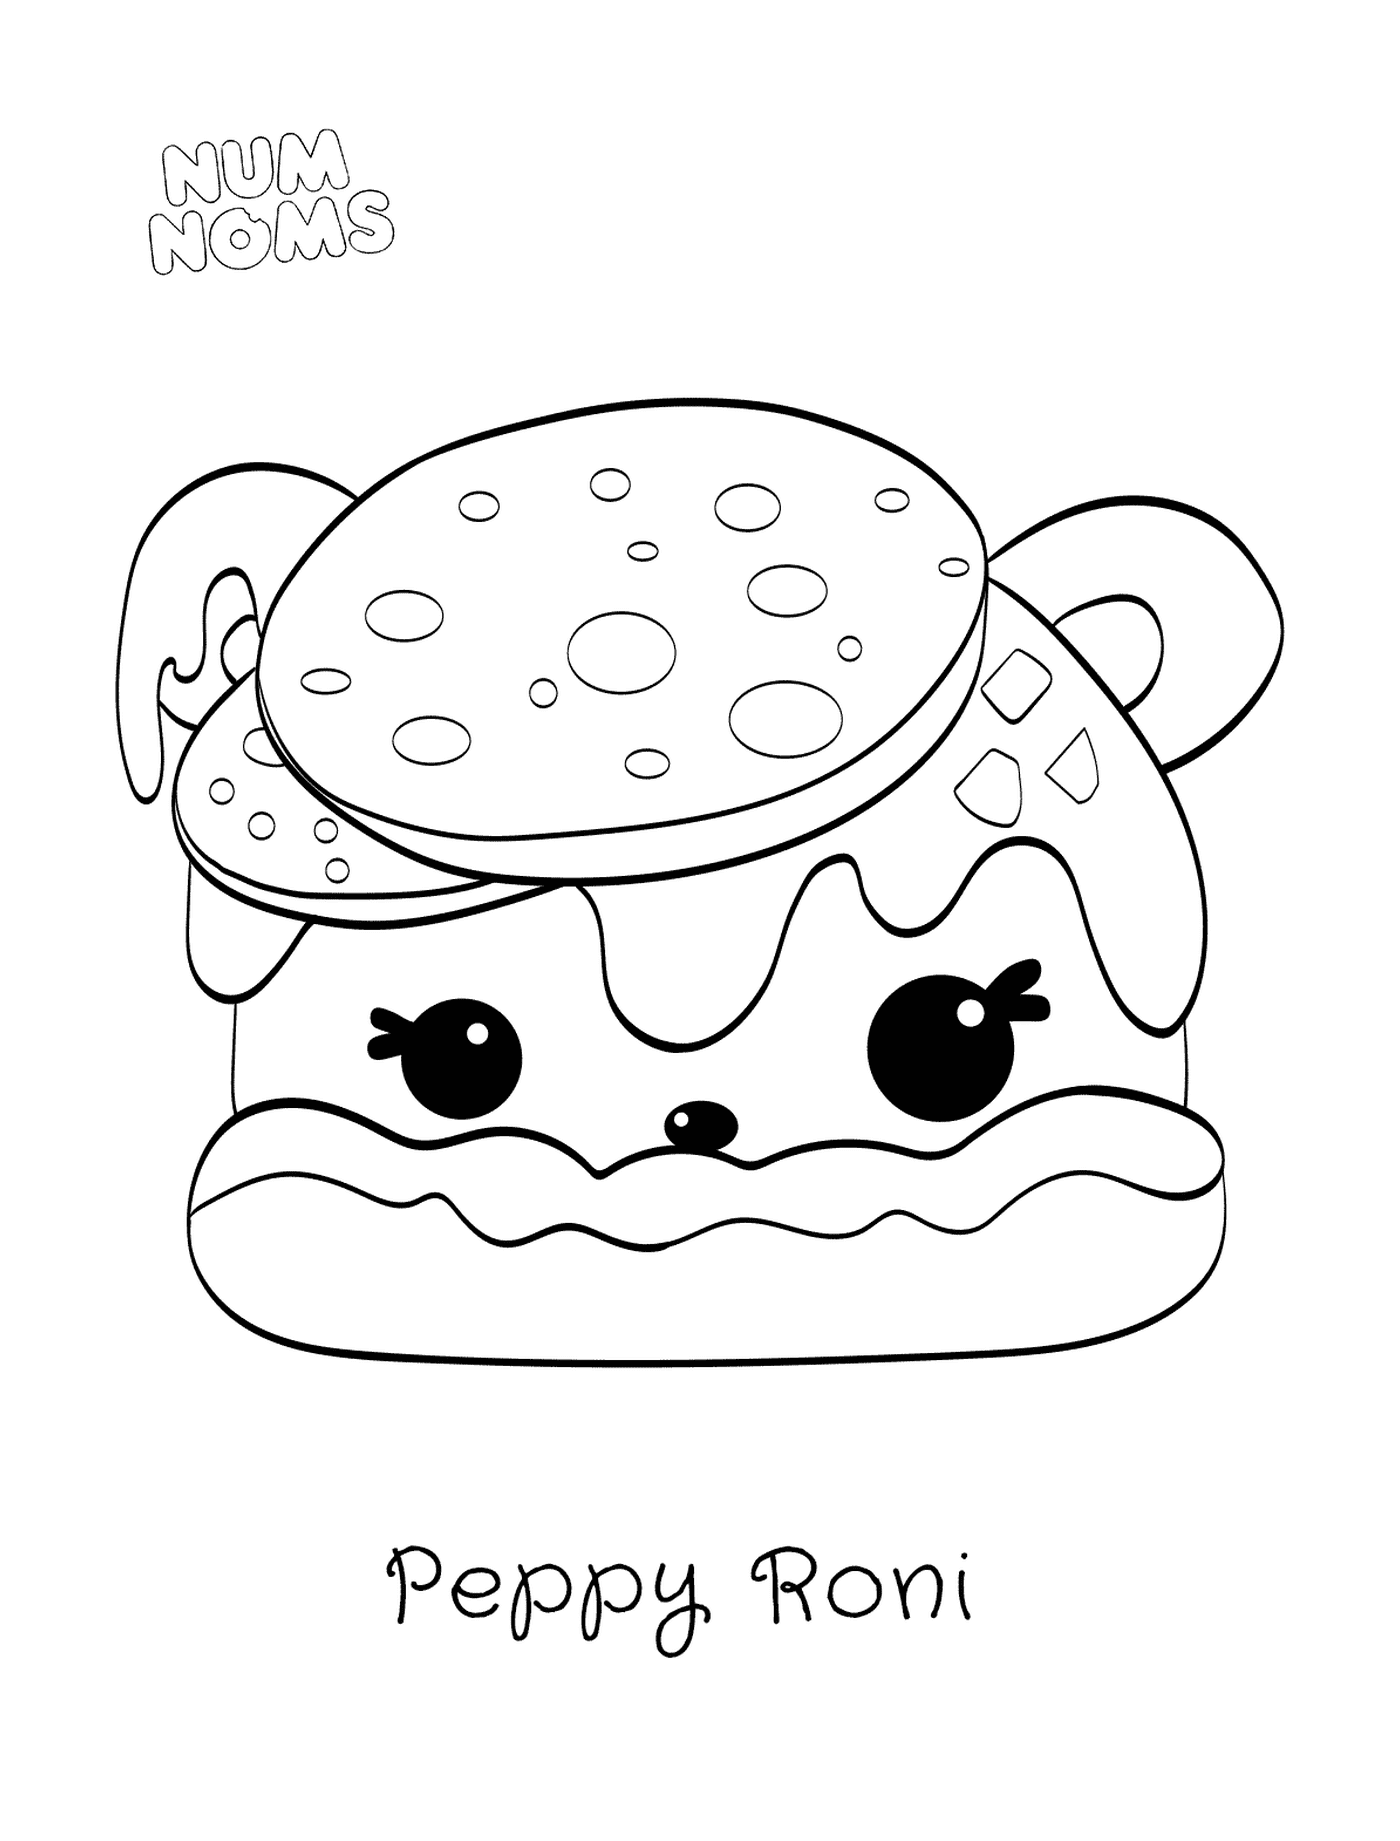  Pizza Peppy Roni di nome Num 